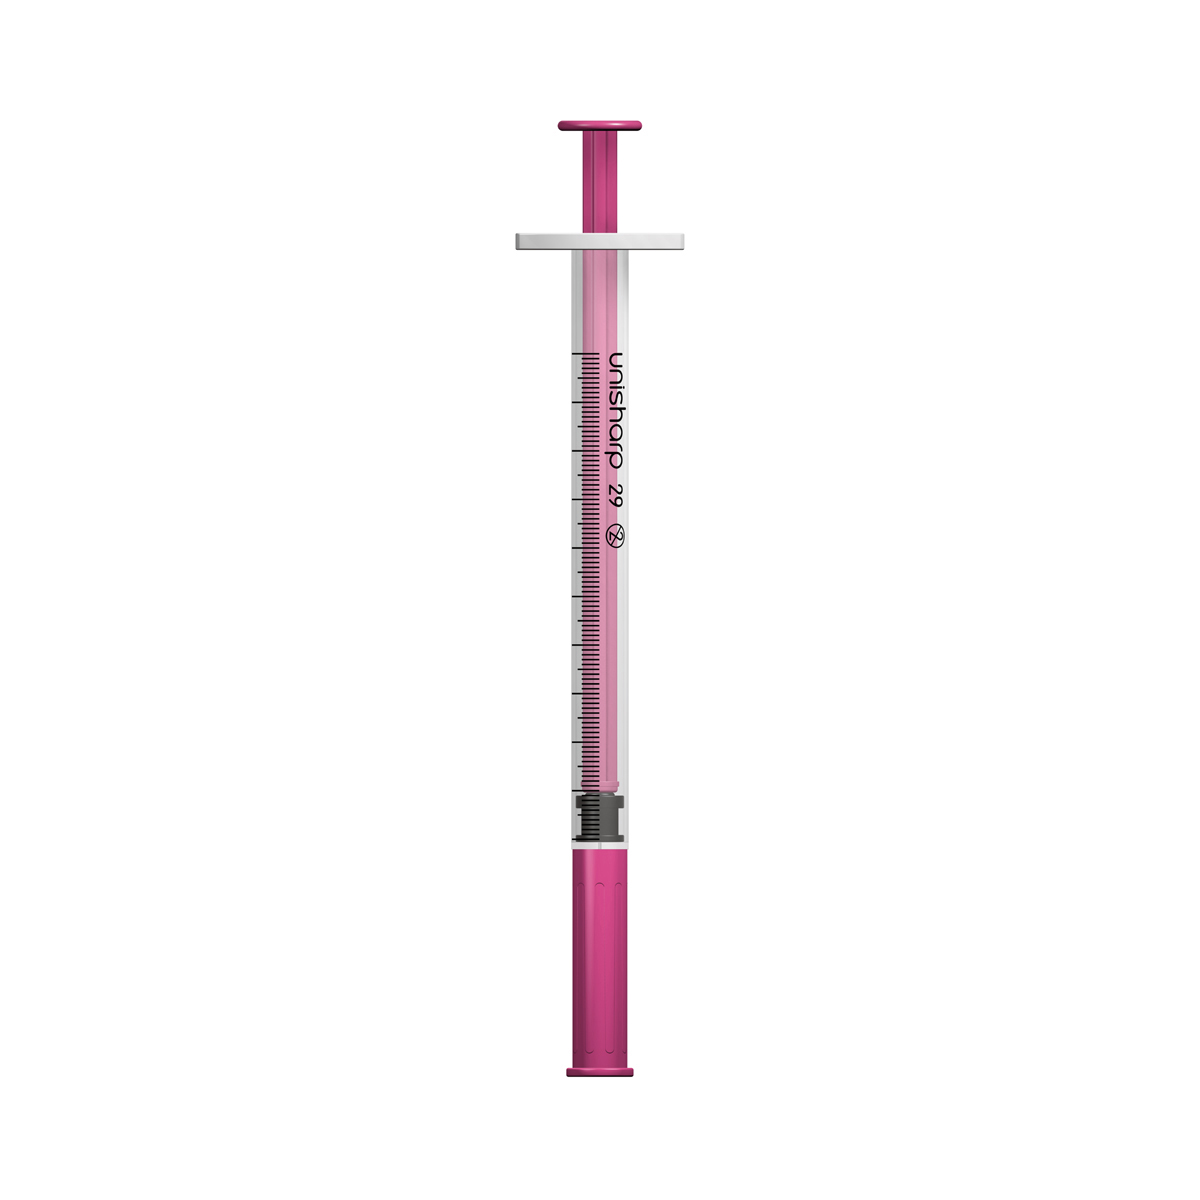 Unisharp 1ml 29G fixed needle syringe: pink